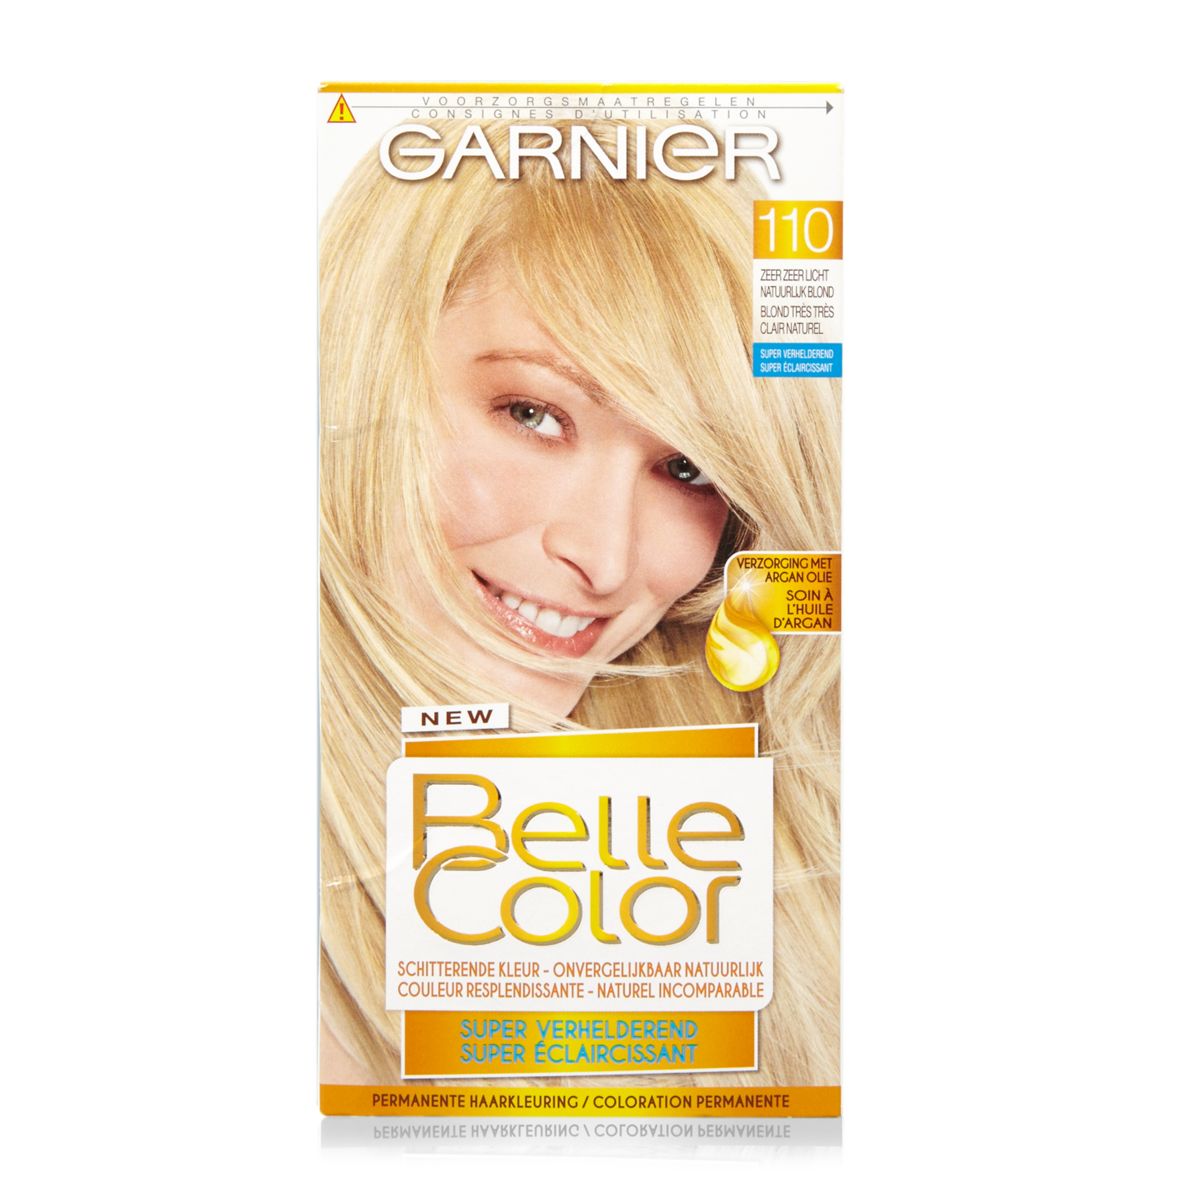 Garnier Belle Color 110 Blond Très Très Clair Naturel